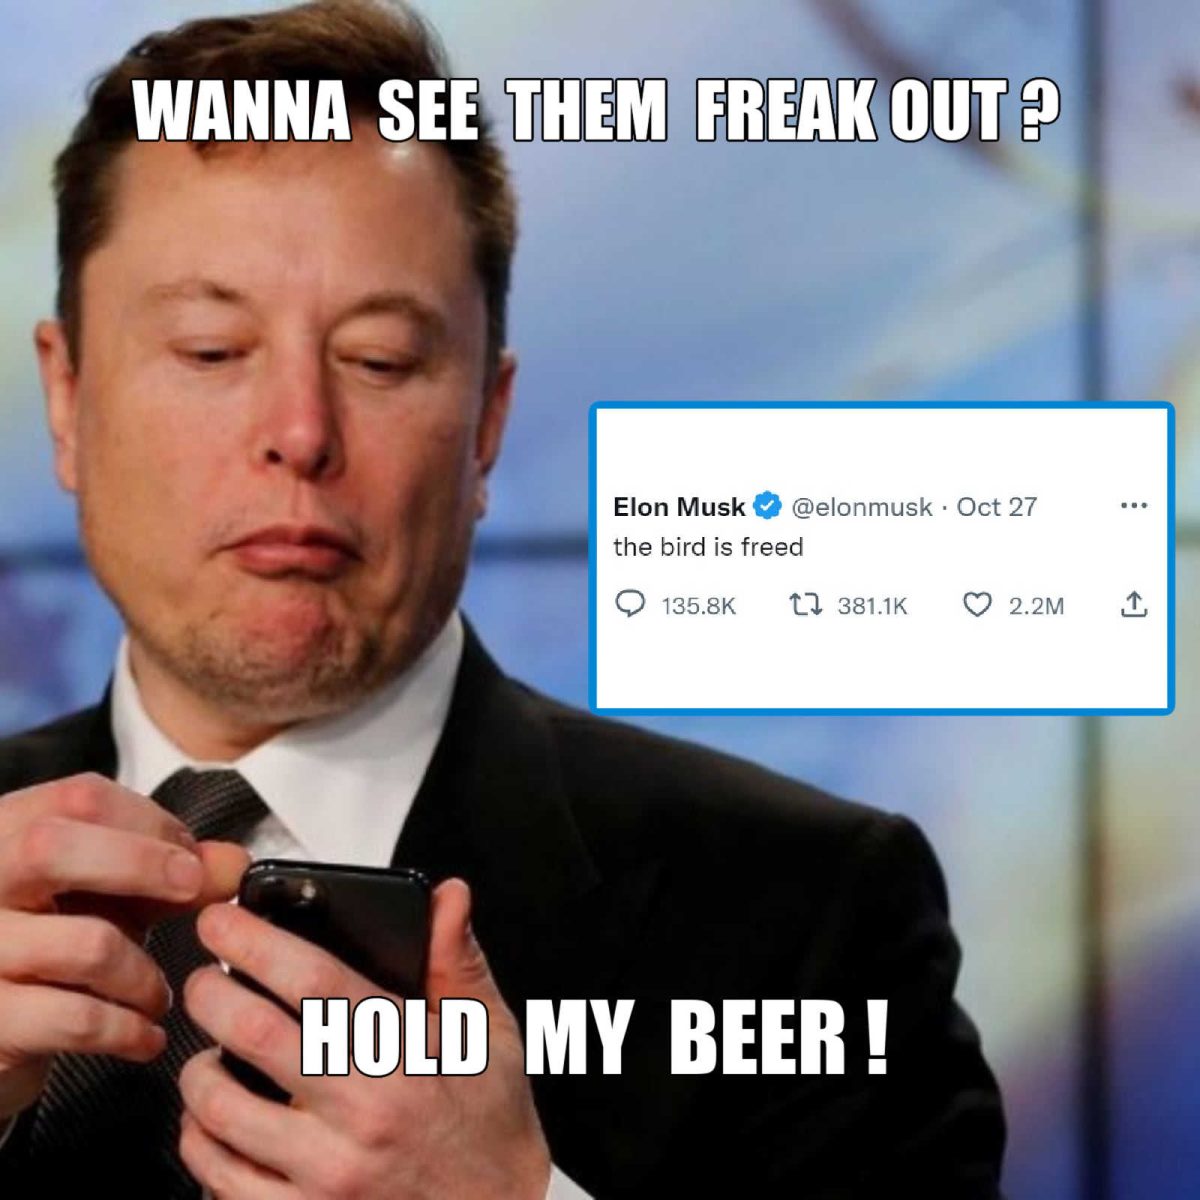 Elon Musk "the bird is freed" tweet